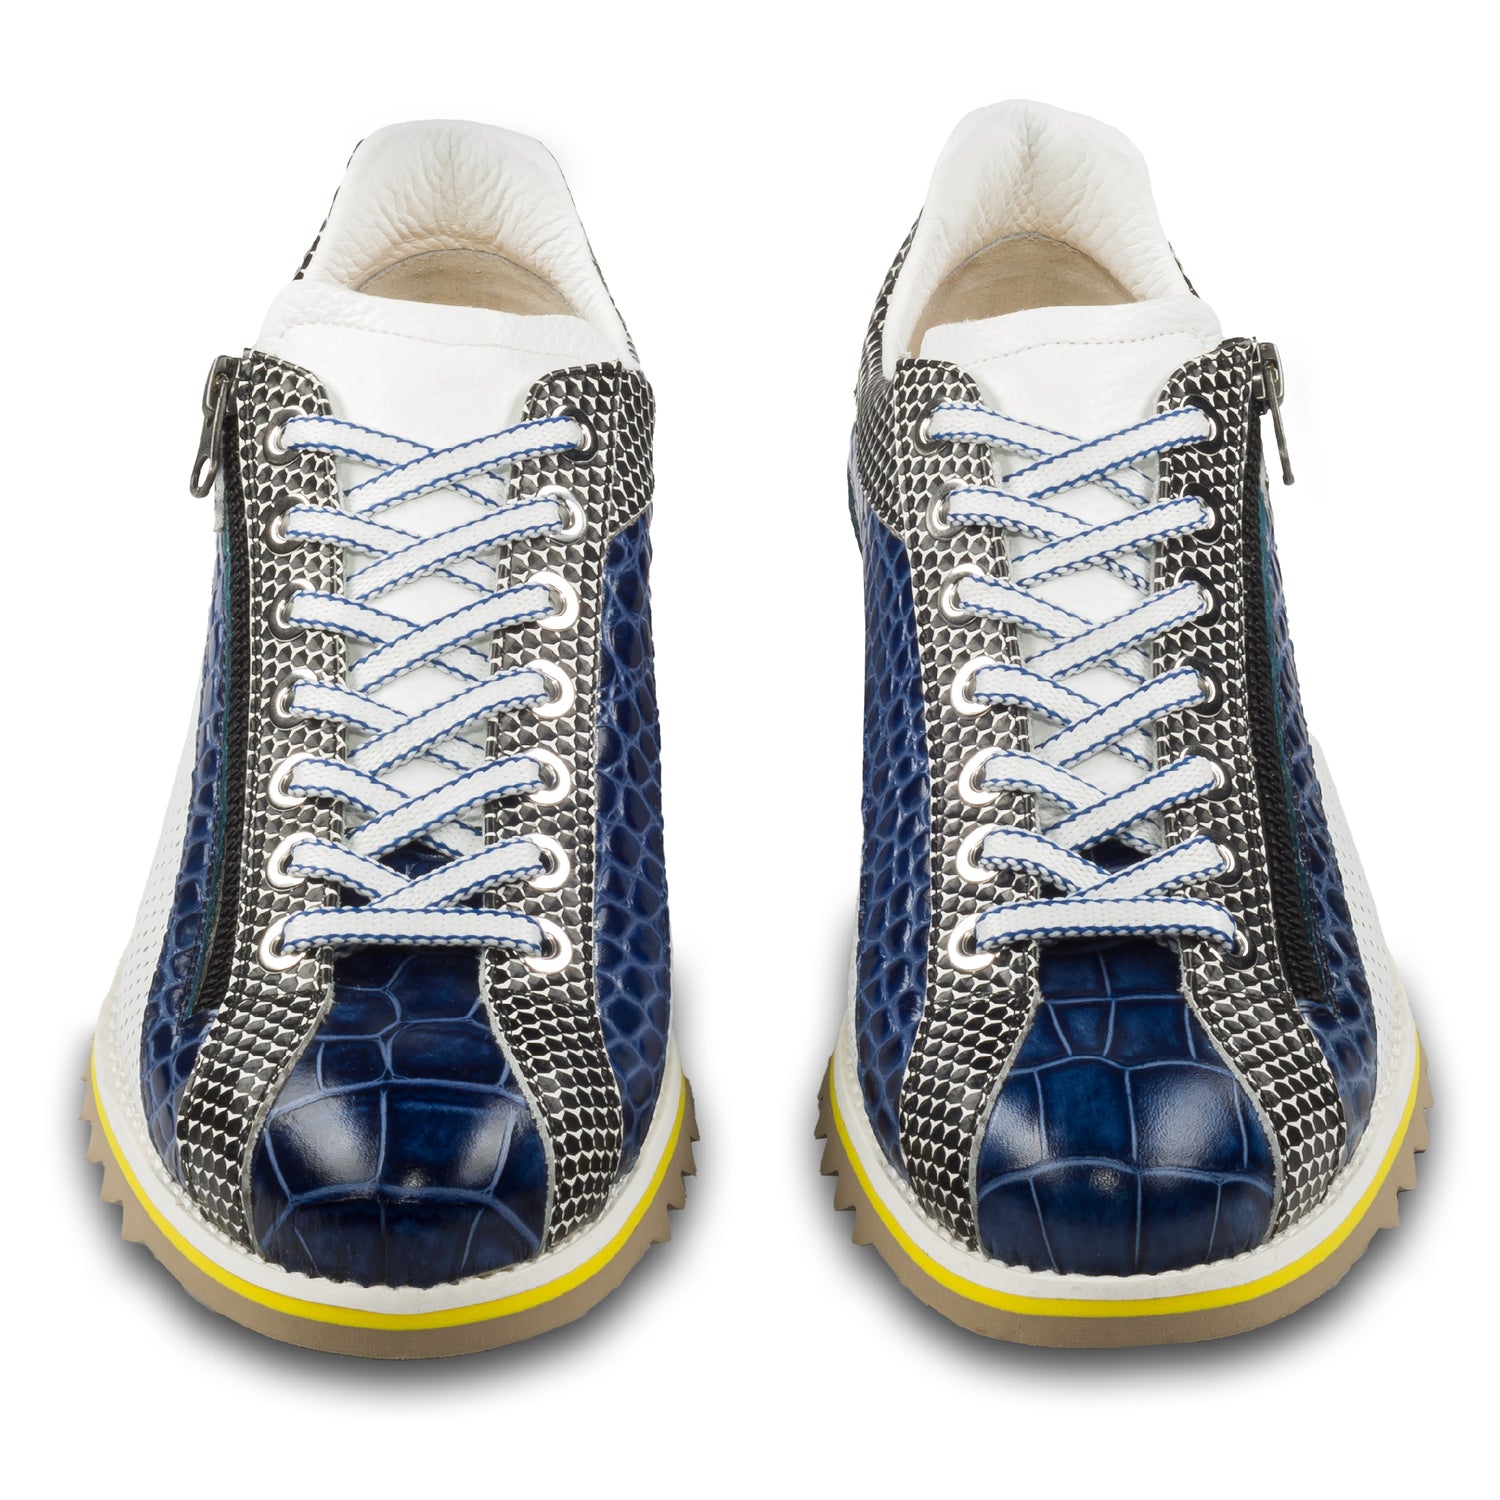 Lorenzi Herren Leder-Sneaker mit raffinierter Prägung und Reißverschluß, in blau / schwarz / weiß. Handgefertigt. Paarweise Ansicht von vorne.